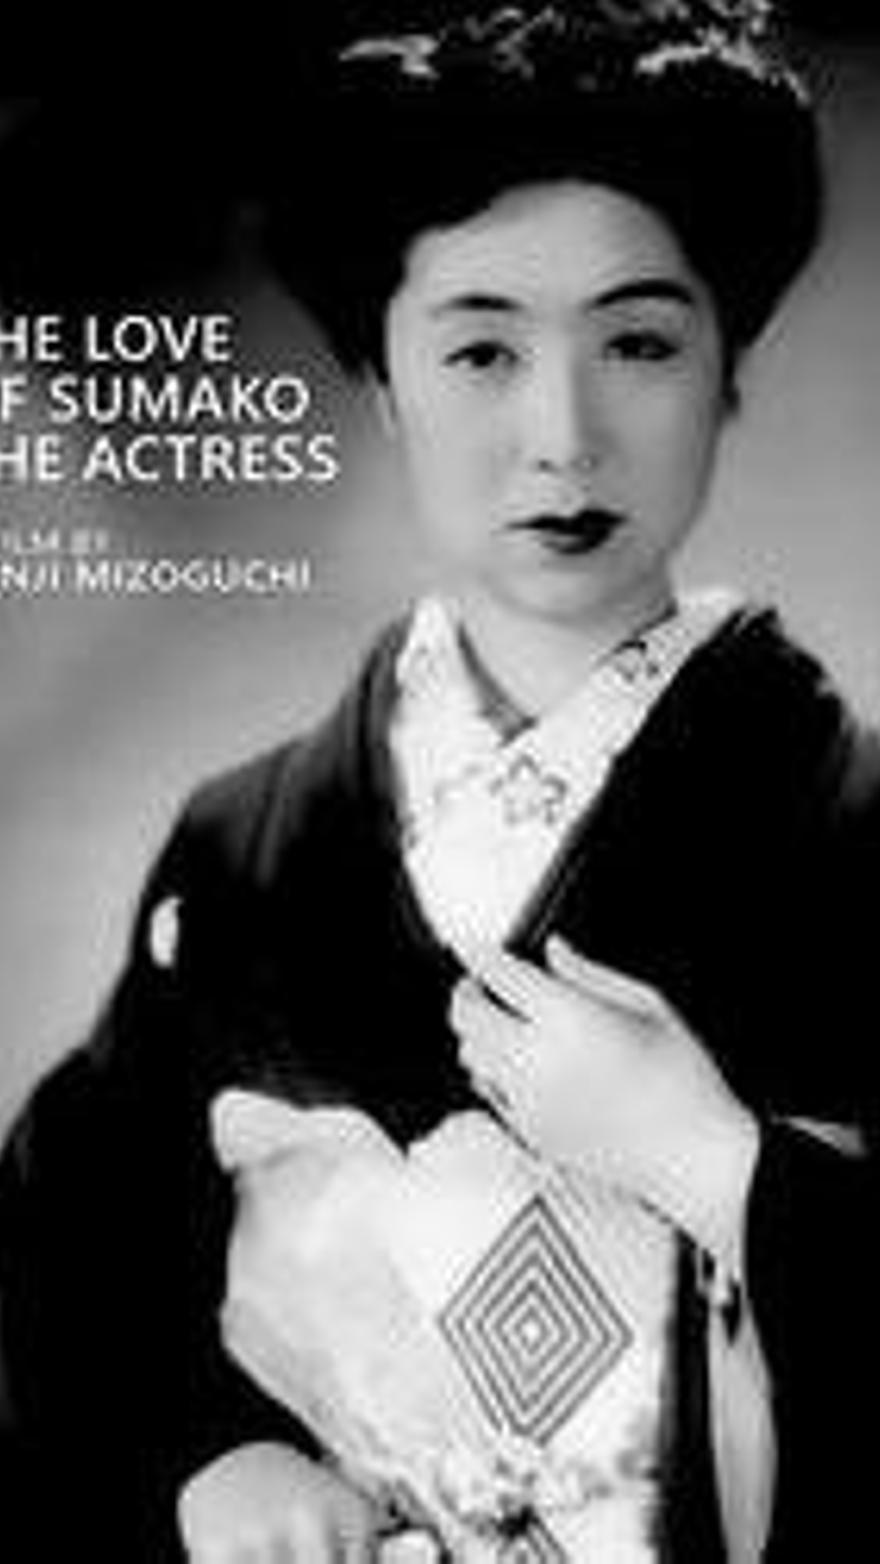 El amor de la actriz Sumako